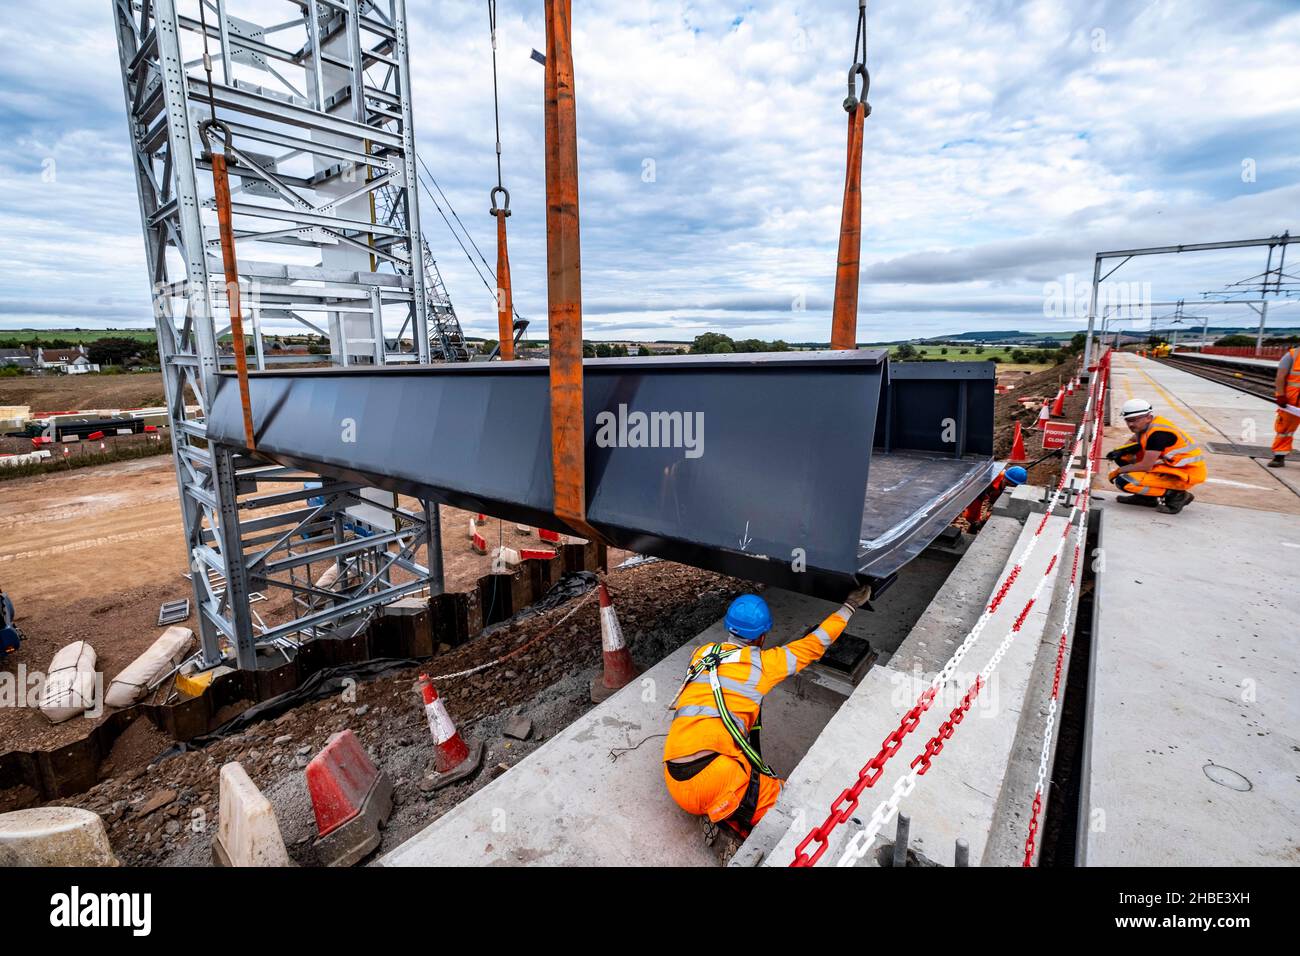 Les cheminots construisent de nouveaux chemins de fer et descendent des ponts Banque D'Images